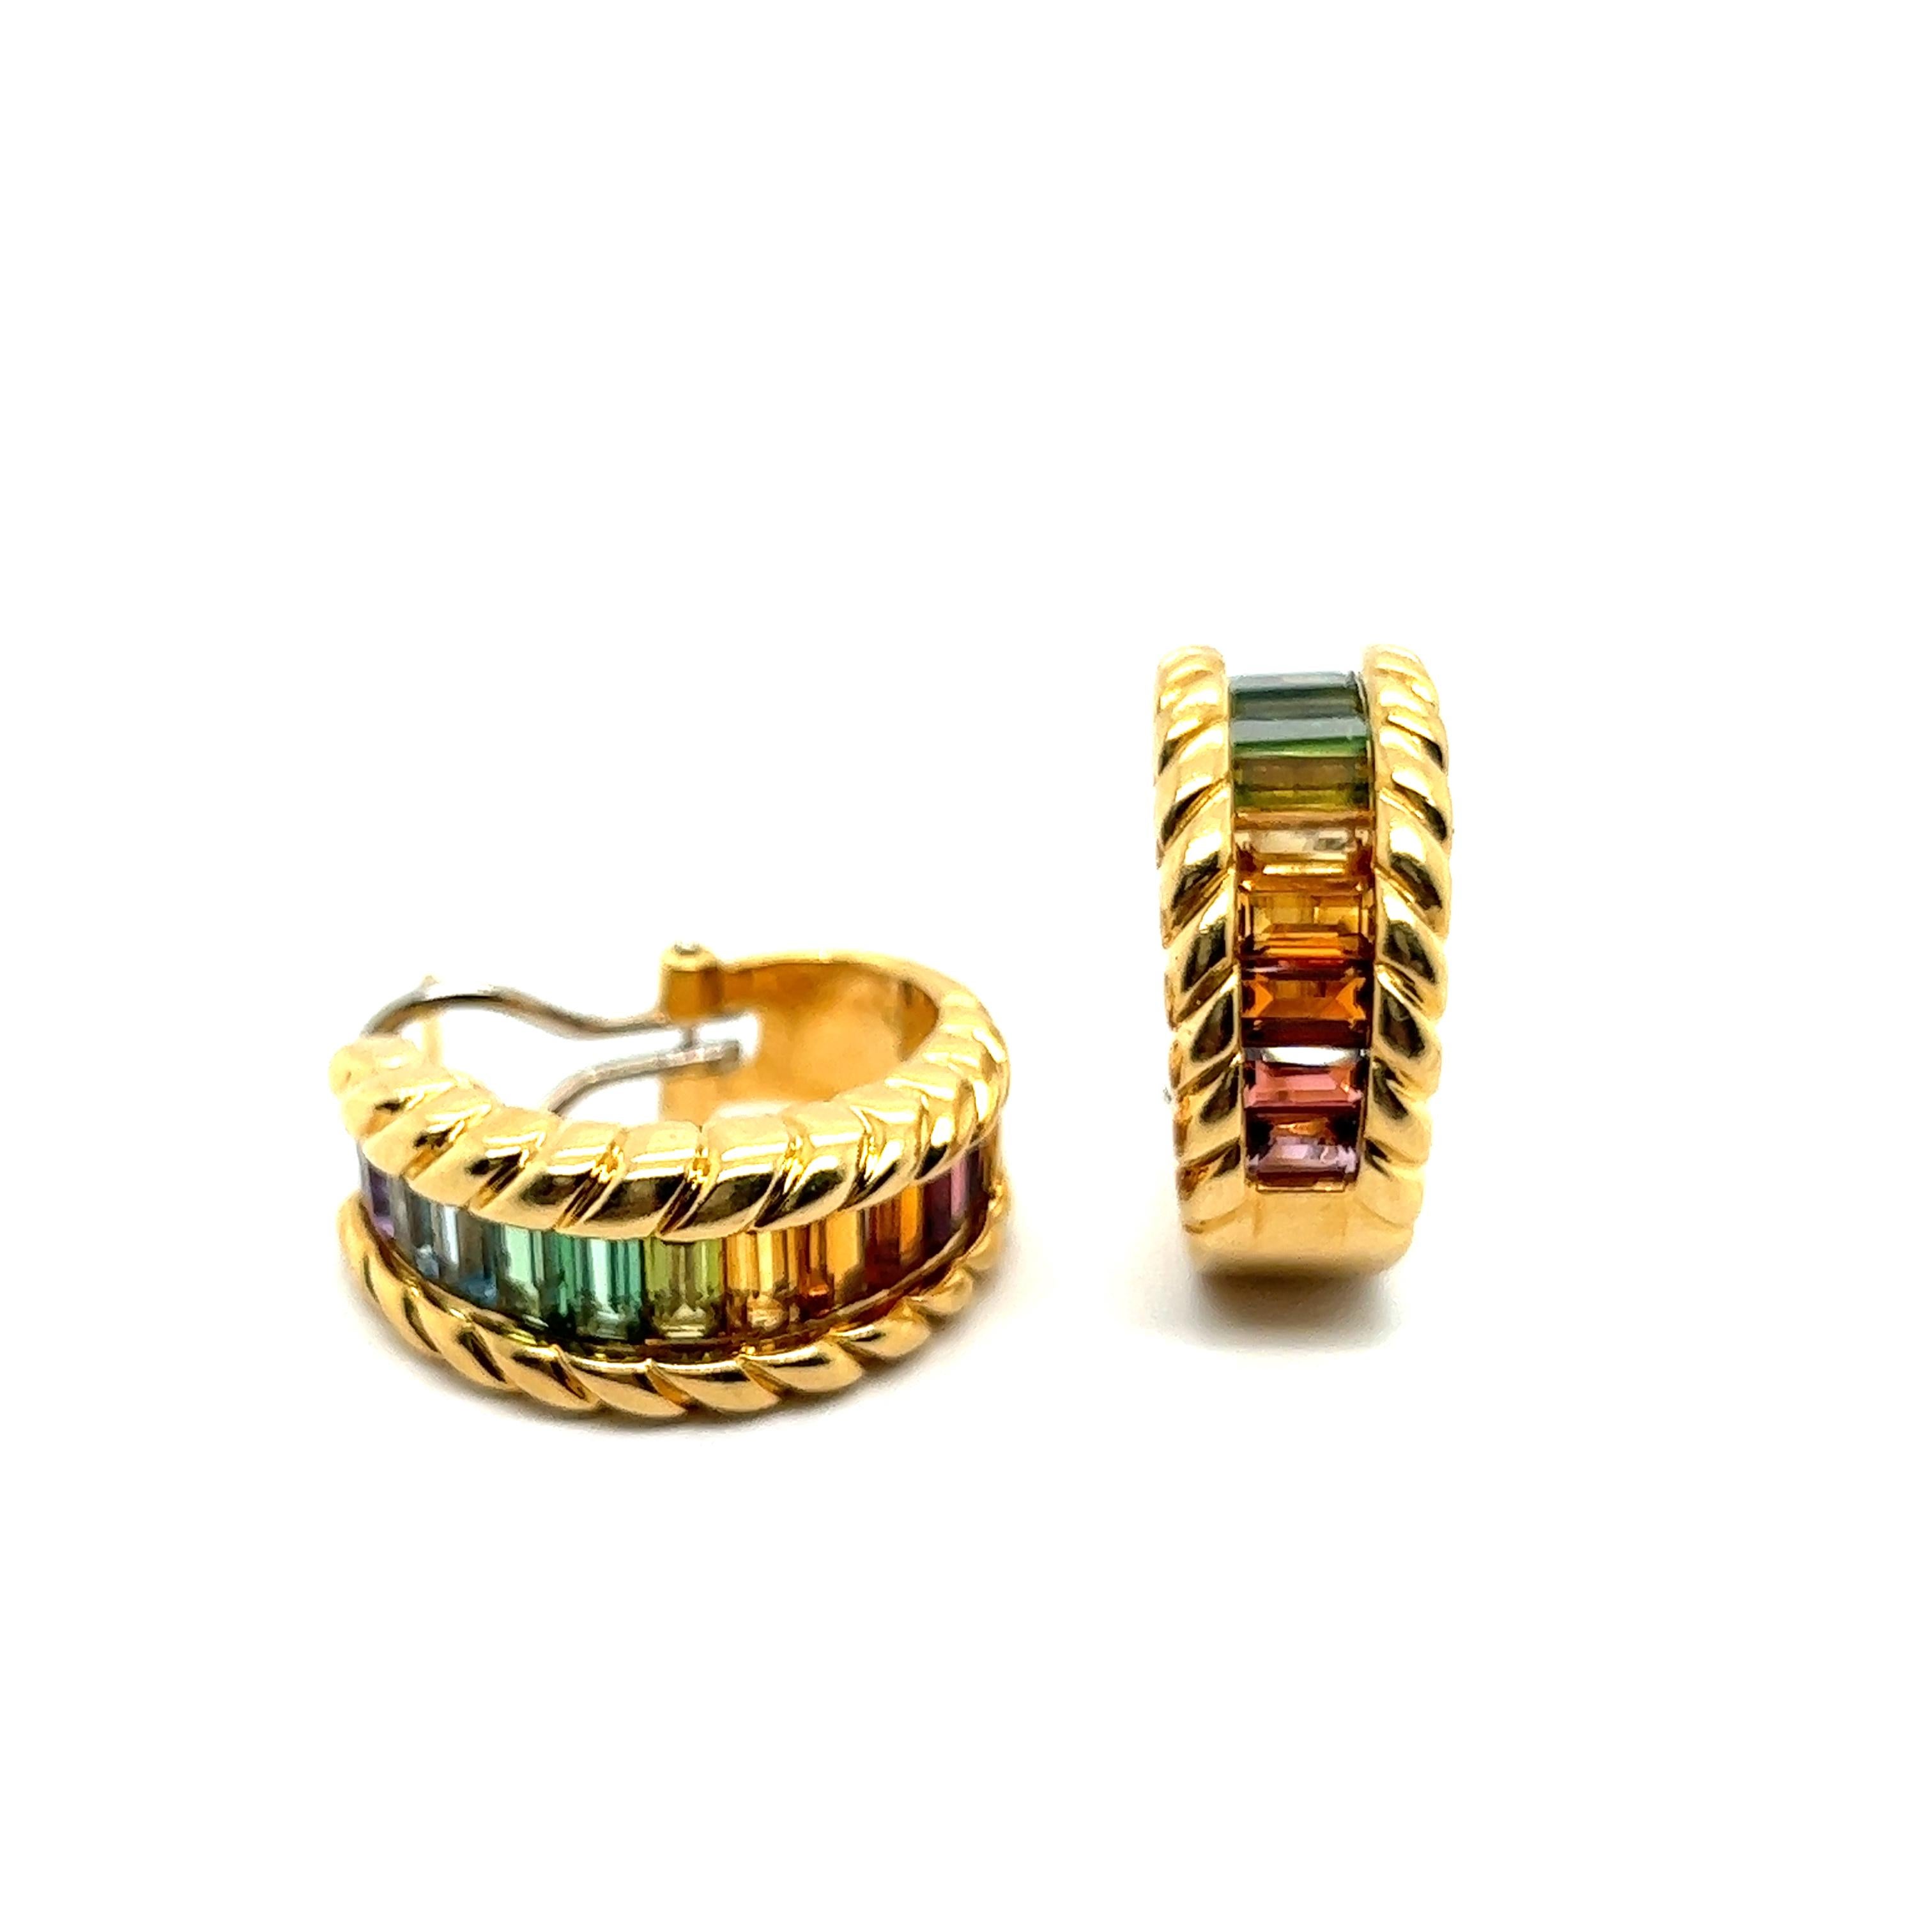 Baguette Cut Earrings with Rainbow Gemstones in 18 Karat Yellow Gold by Gübelin For Sale